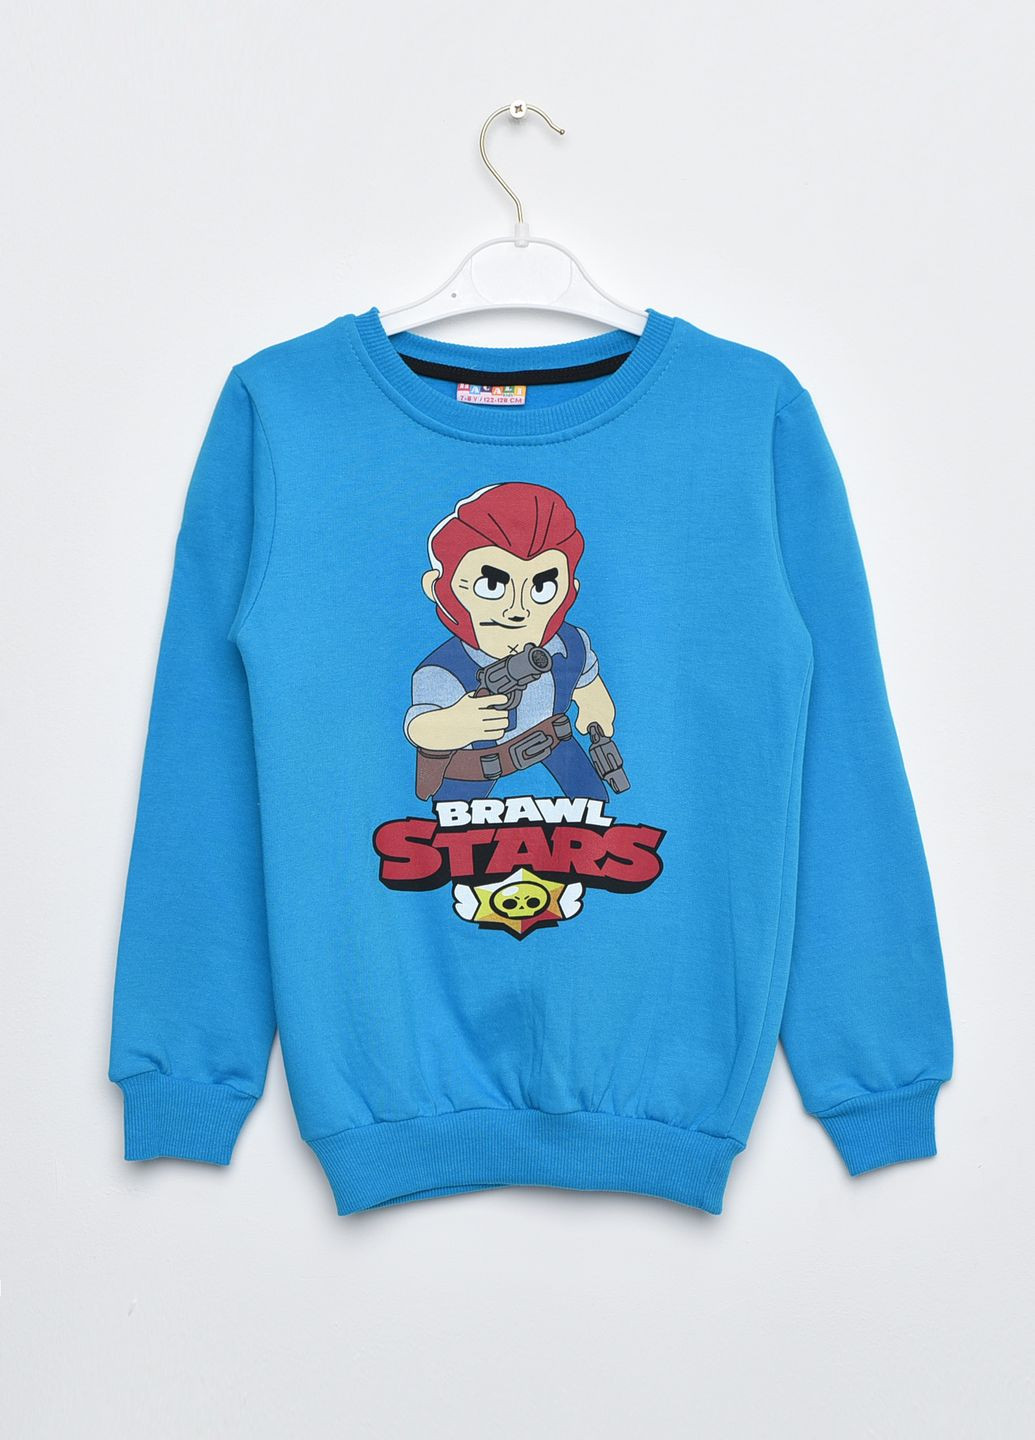 Синий демисезонный батник детский для мальчика на флисе синего цвета пуловер Let's Shop